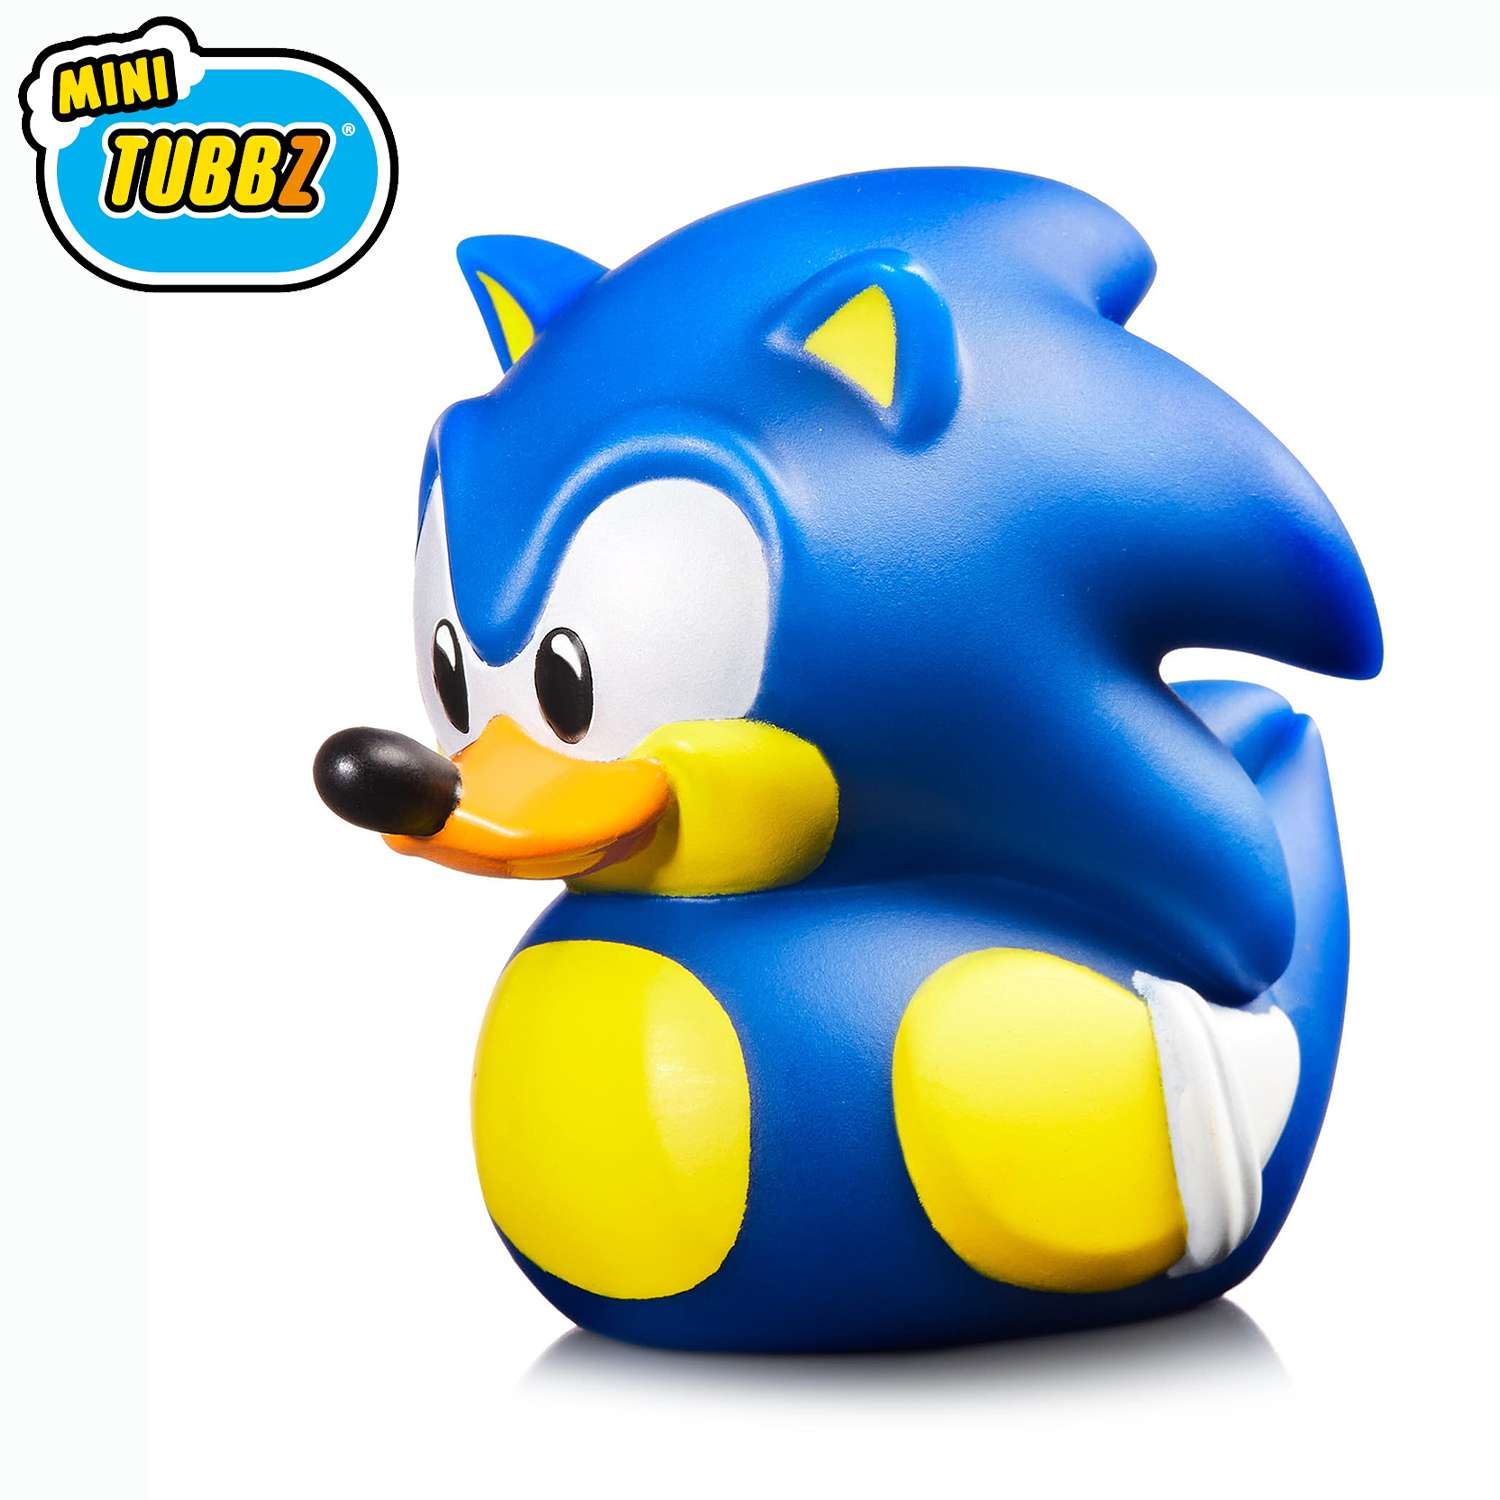 Фигурка Sonic The Hedgehog Утка Tubbz Sonic Mini-series - фото 1